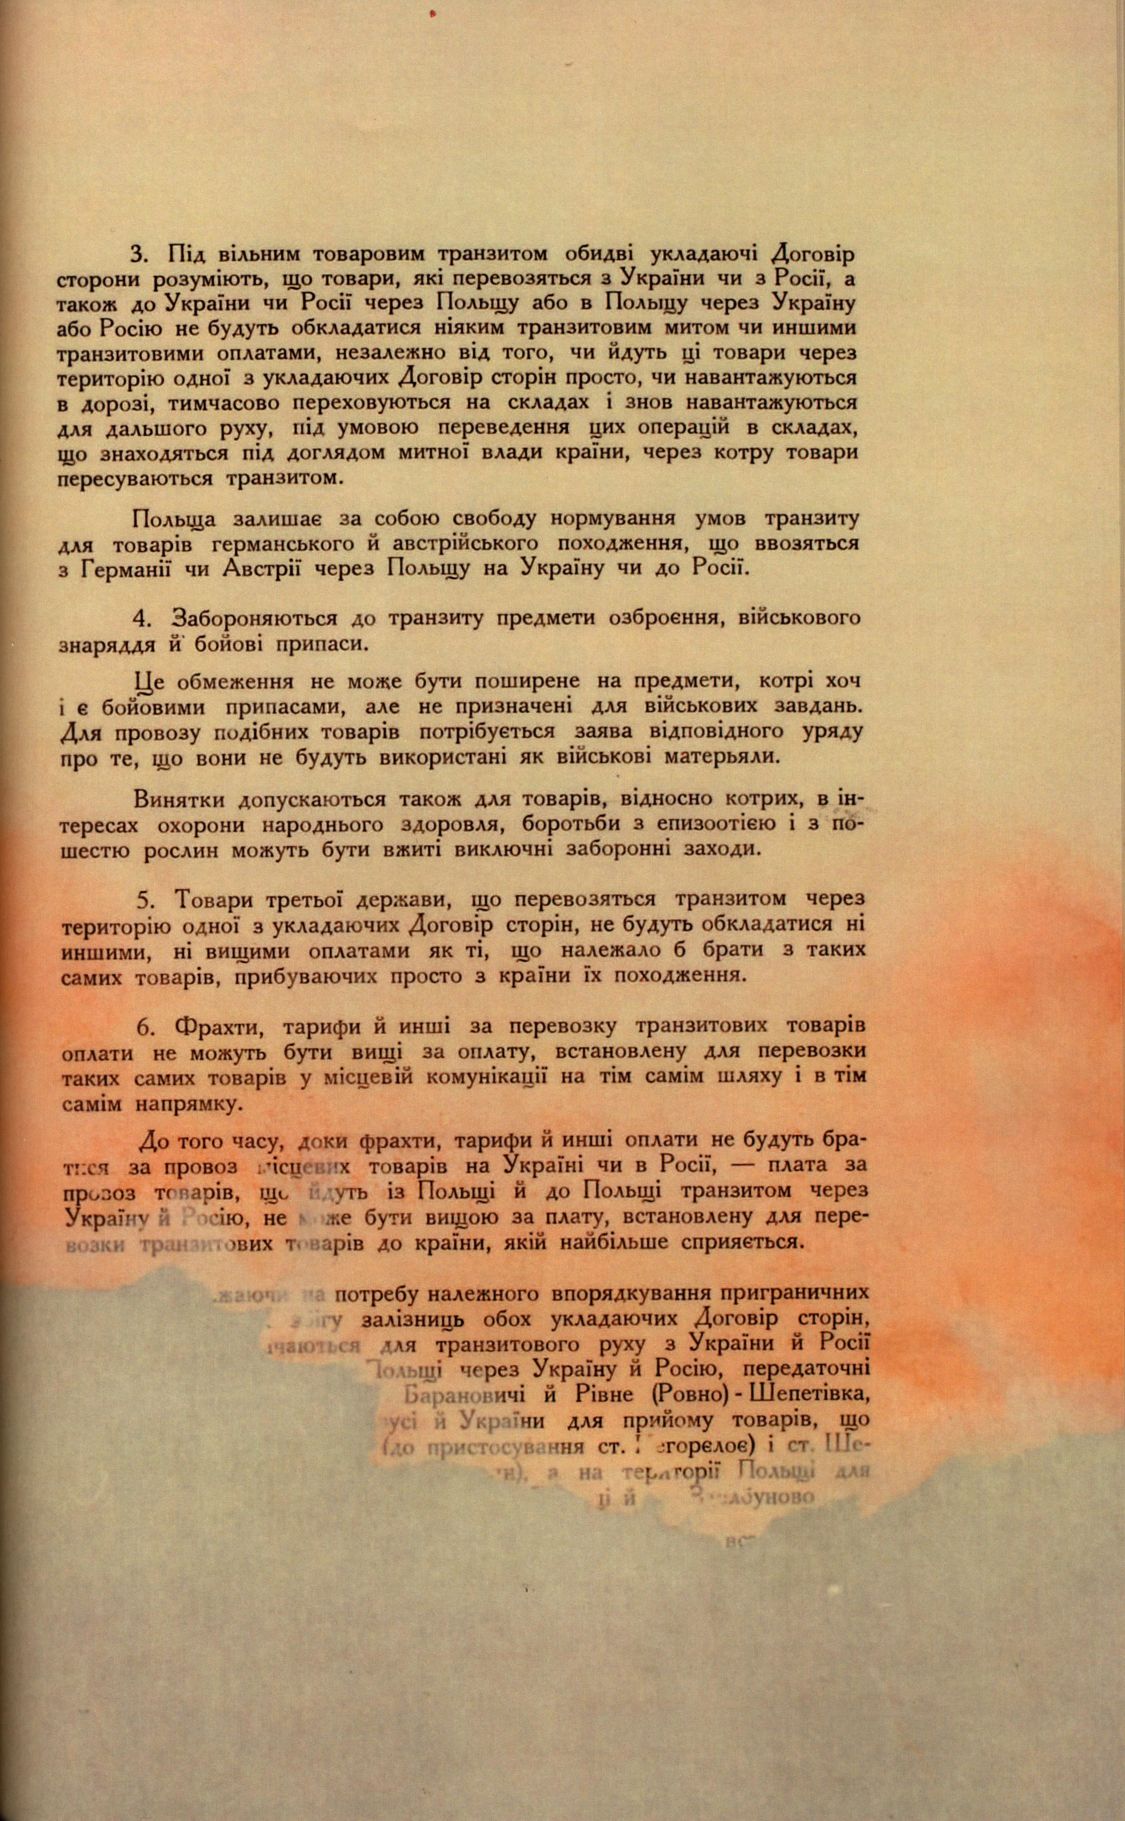 Traktat Pokoju między Polską a Rosją i Ukrainą podpisany w Rydze dnia 18 marca 1921 roku, s. 53, MSZ, sygn. 6739.